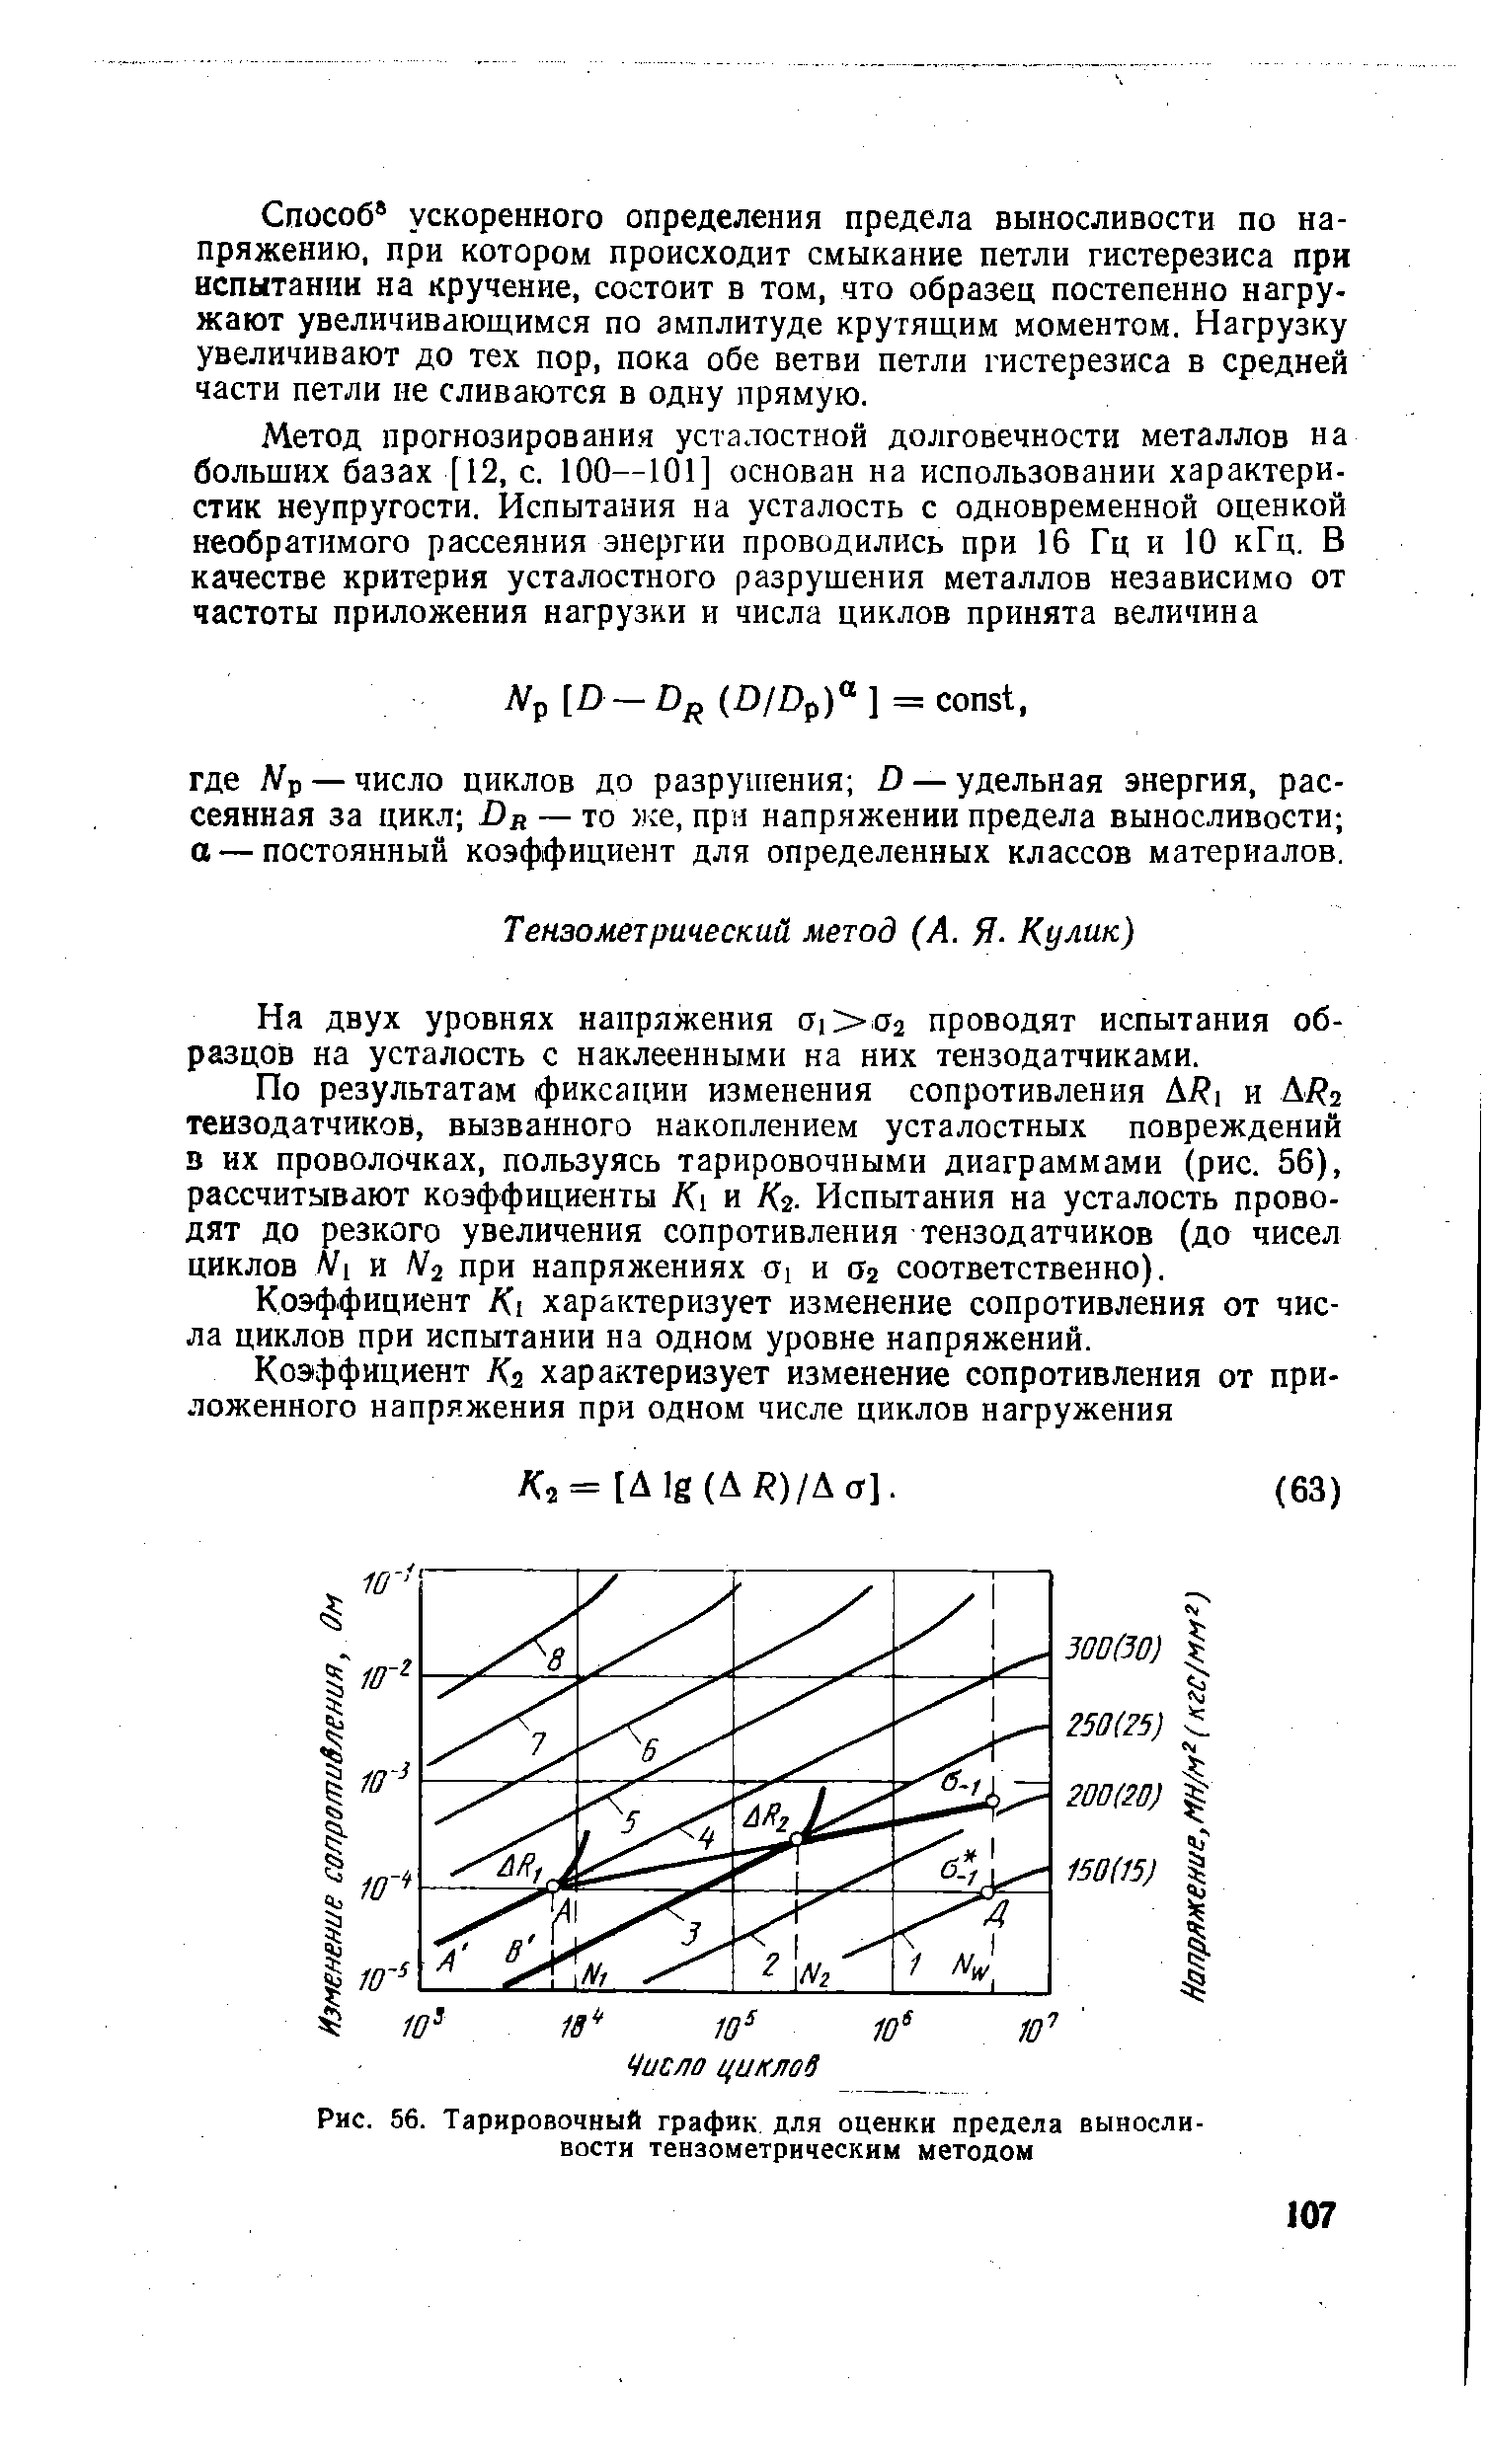 Рис. 56. Тарировочный график для оценки <a href="/info/1473">предела выносливости</a> тензометрическим методом
